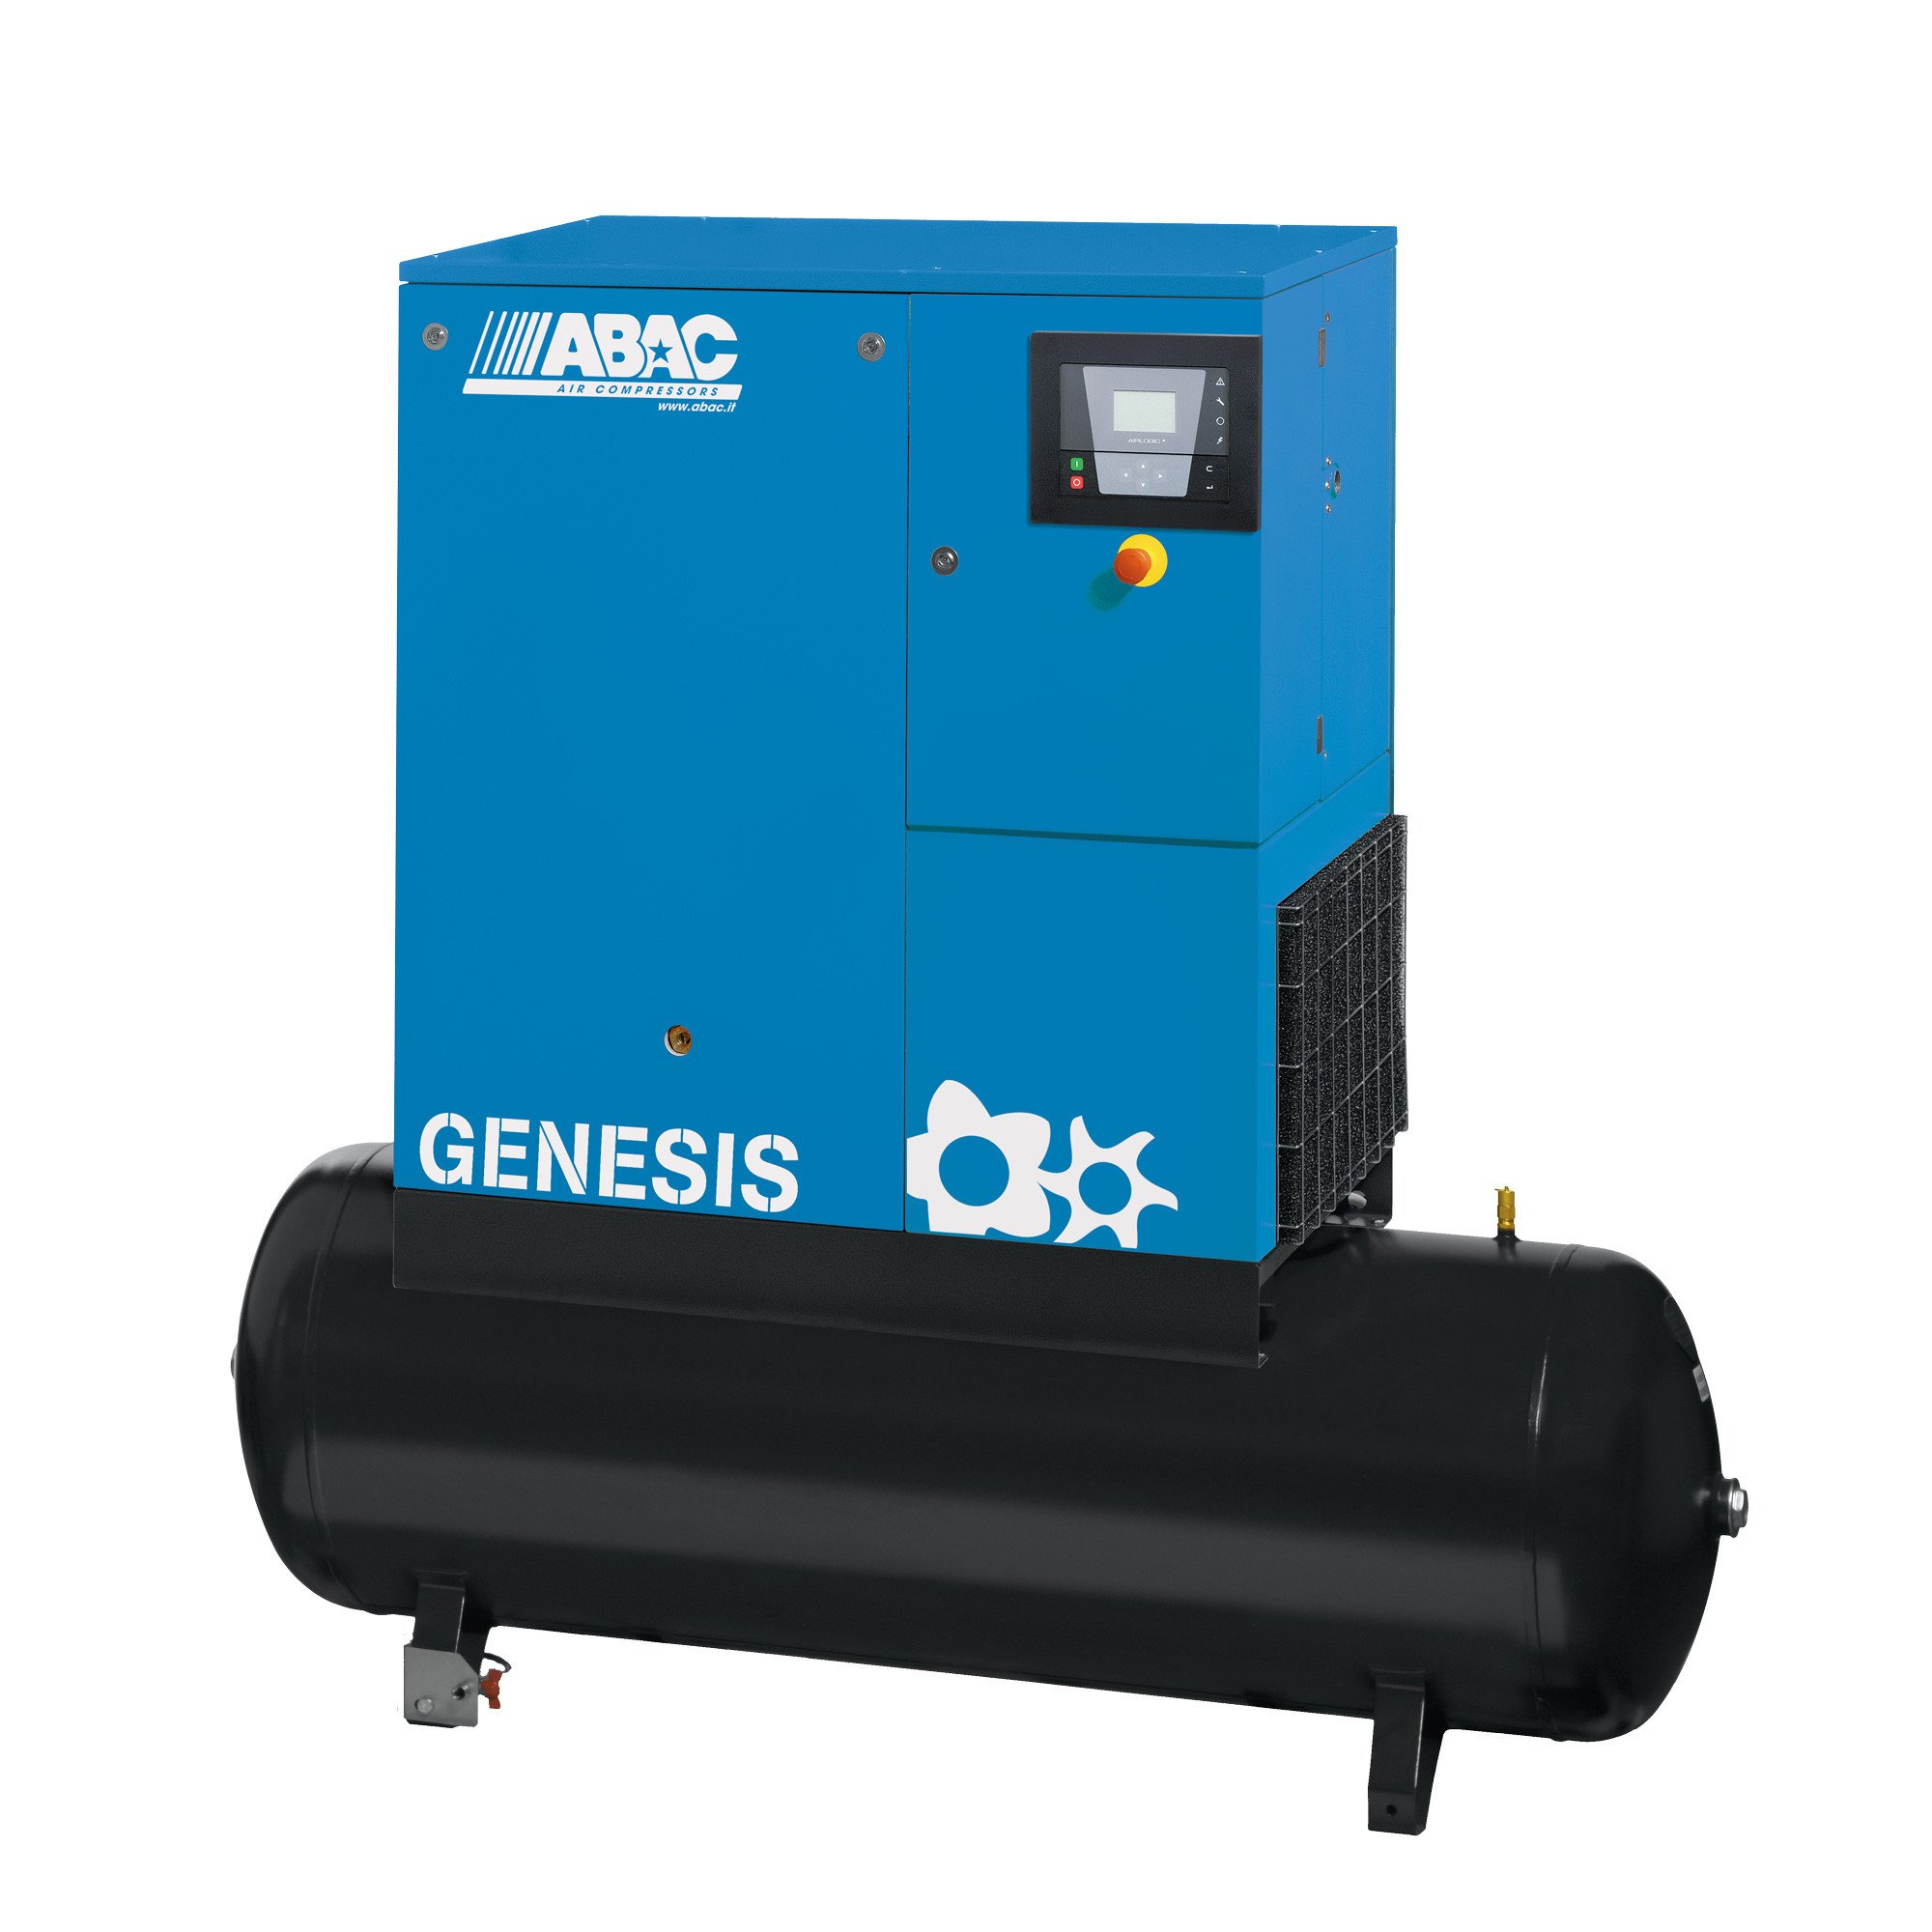 ABAC Genesis 500L, 24 CFM, 5.5 kW定速螺杆空压机